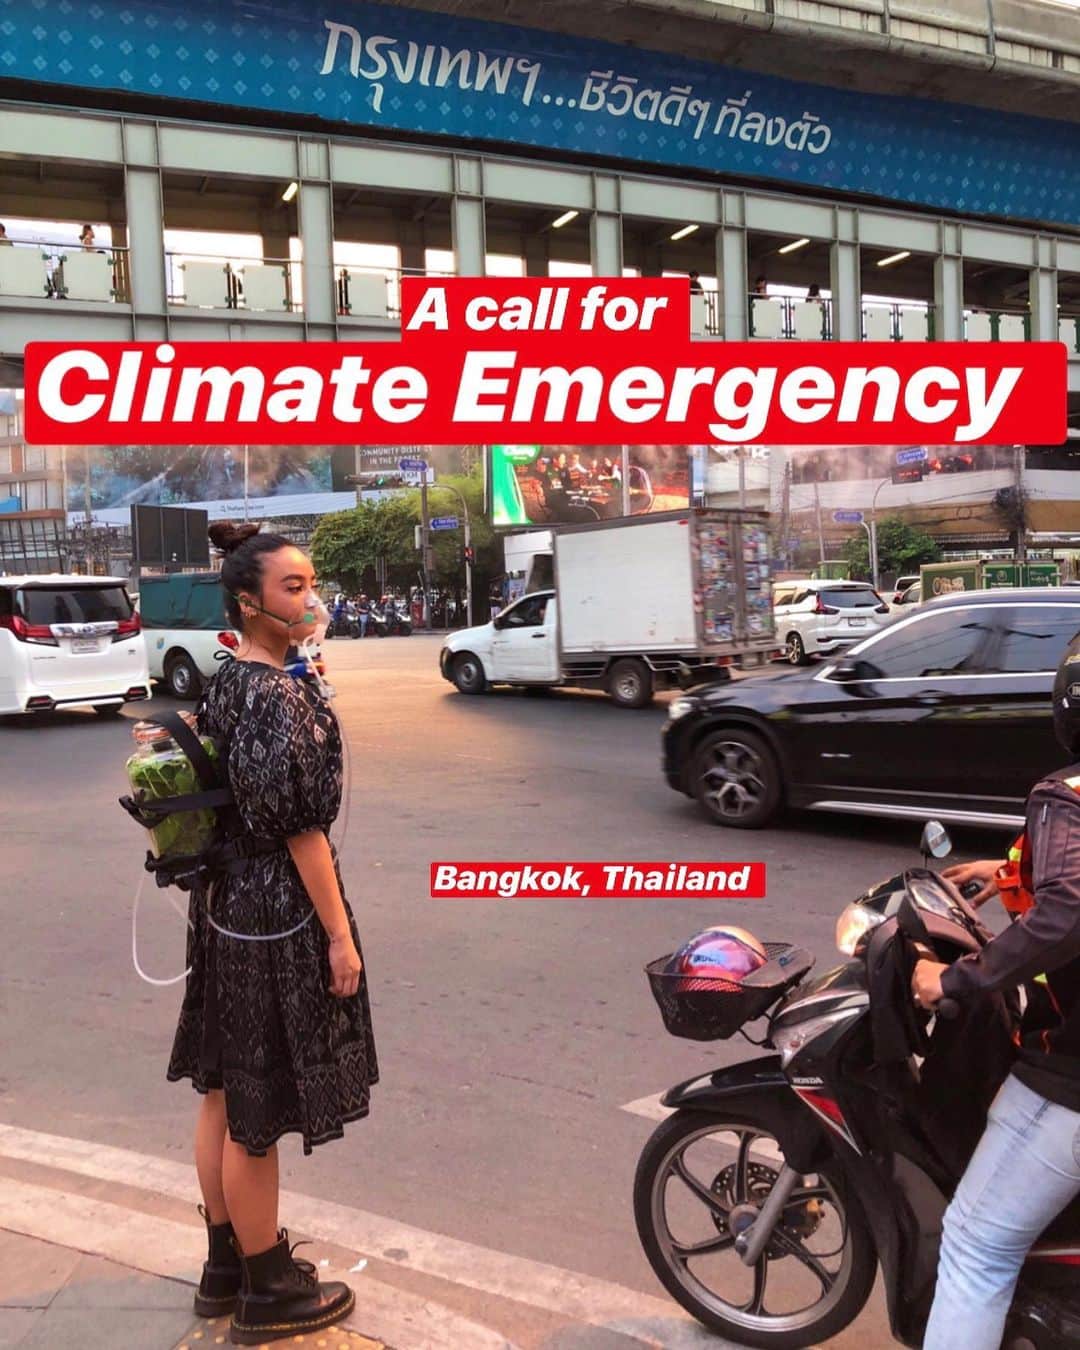 Amata Chittaseneeさんのインスタグラム写真 - (Amata ChittaseneeInstagram)「I think it is about time we all do our parts to really protect what we have left. Air pollution has been a major problem for our health in Thailand plus we have bad quality water too. I do not wish to count down that 30 years from now until Bangkok will be completely in water by 2050.  #Climateemergency #climatechange #airpollution #Bangkok #Thailand  ถึงเวลาแล้วที่พวกเราทุกคนต้องร่วมกันสามัคคี ทำในส่วนที่เราสามารถทำได้ด้วยตัวเอง ไม่อยากเริ่มนับถอยหลังเลยว่า 30 ปีจากนี้ เมืองหลวงไทยจะอยู่ใต้น้ำ แพรและพี่มล @monjirawan ลองทำ oxygen tank จากต้นไม้ เดินจากที่ทำงาน ข้ามถนนสี่แยกไฟแดง ขึ้นบีทีเอสกลับบ้าน อยากรู้ว่าจะมีใครสังเกตหรือมองมั้ย ผลที่ออกมาคือ แทบไม่มี ทุกคนก้มหน้าก้มตาเล่นมือถือ ทำให้experiment นี้ fail เพราะว่า ข้อความที่เราอยากส่งไปไม่ถึงสังคมก้มหน้าที่เราอยู่ 🥴 ใครที่อ่านข้อความนี้แพรอยากให้ ทุกคนเริ่มสังเกตตัวเอง ดูว่าตัวเรานั้นเป็นยังไง สบายดีมั้ย สภาพจิตใจและร่างกายเราเป็นยังไง คนรอบตัวเราเป็นยังไง สภาพแวดล้อมที่เราอยู่เป็นยังไง อาหารที่เรากินอยู่ คือ อาหารจริงๆหรือป่าว แล้วน้ำที่เราดื่มละ สะอาดมั้ย? น้ำที่เราดื่มอยู่ นั้นมากจากไหน น้ำจากต้นน้ำจริงๆ หรือ ขวดplastic อากาศที่เราหายใจอยู่ทุกวันละ มองไม่เห็นแต่รู้มั้ย ว่ามีอะไรอยู่ในอากาศบ้าง? ฝุ่น? เชื้อโรค? มลพิษ? Slience killer เลย เมื่อเรารู้ถึงขนาดนี้แล้วว่า เรากำลังเดินทางตามเส้น graph ของชีวิตที่มีแต่จะแย่ลงไปเรื่อยๆ เราจะปล่อยให้มันเป็น เรื่องของคนอื่นที่ต้องจัดการอีกเหรอ? แล้วแบบนี้เราควรจะทำอย่างไรดี  @monjirawan  1.ใช้ขนส่งสาธารณะ ลดการใช้การเผาน้ำมันเชื้อเพลิง ลดการปล่อยควันจากท่อไอเสียรถยนต์ส่วนตัว  2 . เวลาแปรงฟันล้างหน้าใช้แก้วหรือขันน้ำตวงน้ำ แทนการเปิดก๊อกทิ้งไว้ เพื่อลดการใช้น้ำ  3. แยกขยะก่อนทิ้ง เพื่อให้เจ้าหน้าที่ง่ายต่อการคัดแยกนำไปรีไซเคิลได้  4. เก็บเศษผัก แยกเศษอาหาร ออกจากครัว ออกจากภาชนะ ทำปุ๋ยหมักใช้ในครัวเรือน  5. เมื่อพบเห็นขยะในที่ธรรมชาติ เช่น ทะเล หาดทราย ป่าเขา ให้ช่วยกันเก็บขยะไปทิ้ง ในจุดทิ้ง  6. เมื่อเที่ยวในสถานที่ธรรมชาติ ให้รับผิดชอบขยะที่นำไป ไม่ทิ้งขยะในแหล่งธรรมชาติ  7. ศึกษาความรู้ เกี่ยวกับการใช้ชีวิตที่มีผลกระทบต่อสิ่งแวดล้อมน้อยที่สุด  8. เข้าร่วมกิจกรรมเกี่ยวกับการดูแลธรรมชาติ ตามโอกาสเหมาะสม เพื่อฝึกประสบการณ์ ปลูกฝังความเข้าใจในการดูแลสิ่งแวดล้อม  9. ลดการบริโภทที่ไม่จำเป็น ลดการซื้อ การผลิต  Anyone else would like to share solutions?」1月21日 21時30分 - pearypie